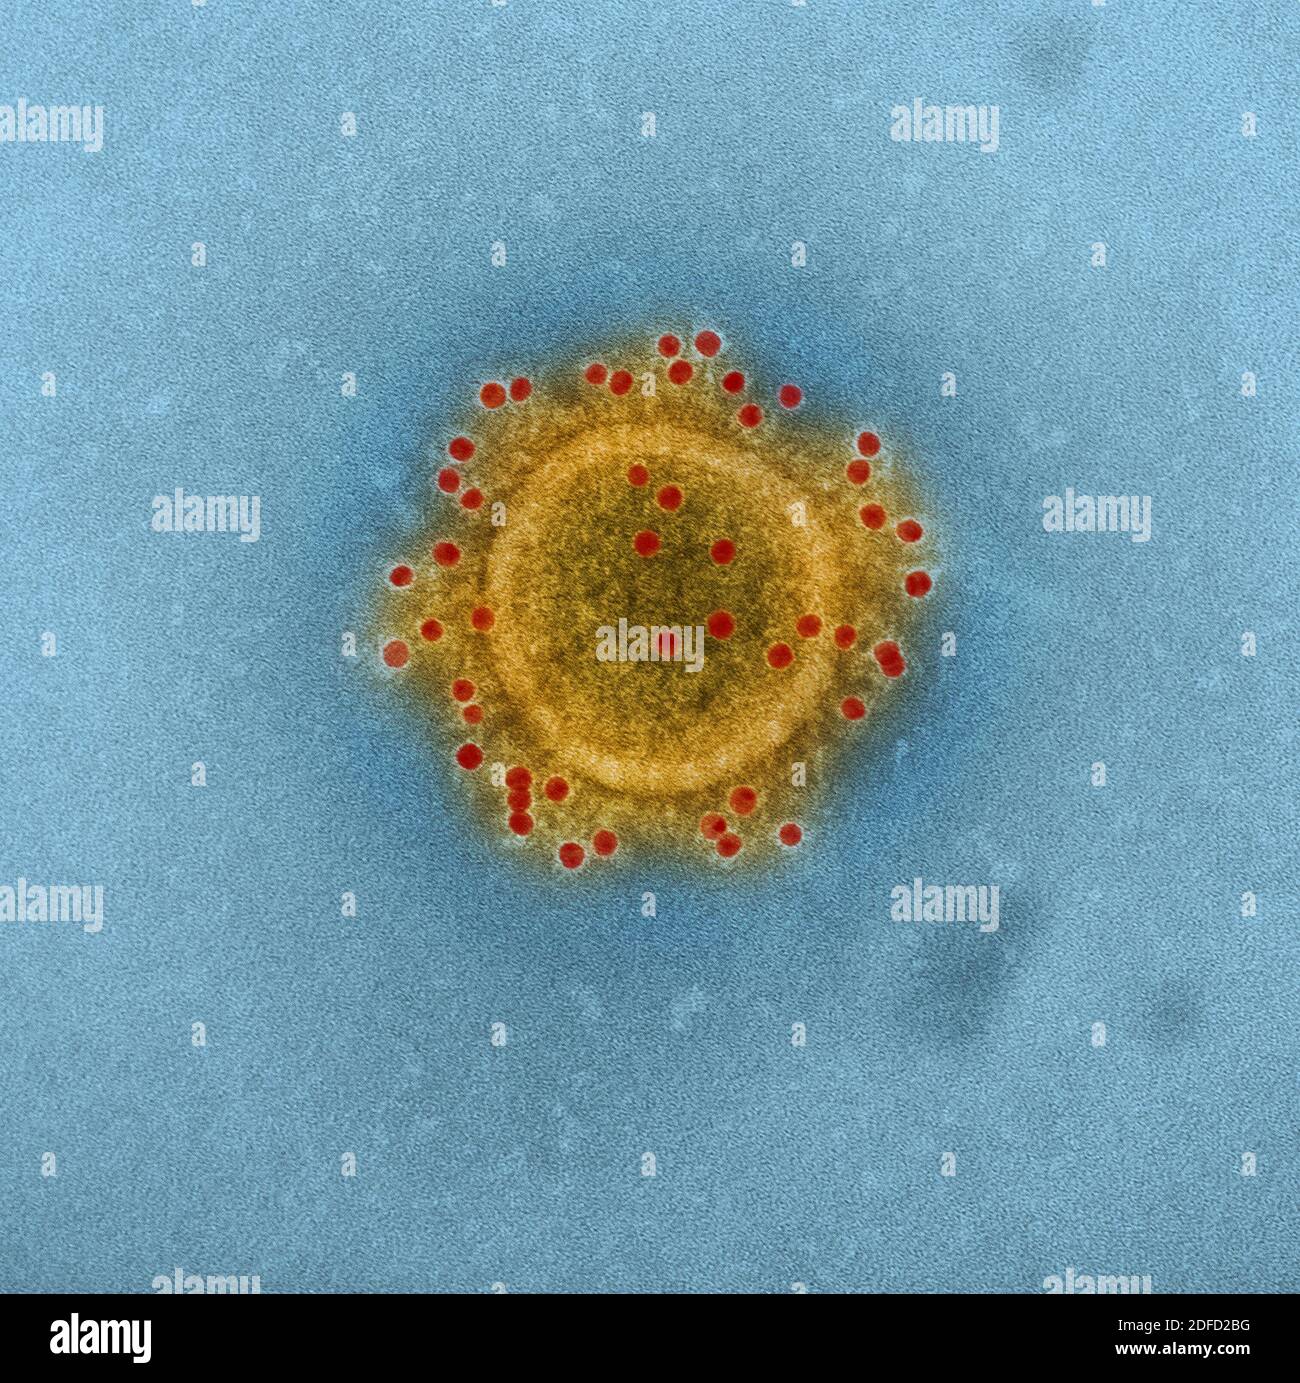 Mers coronavirus particle Stock Photo